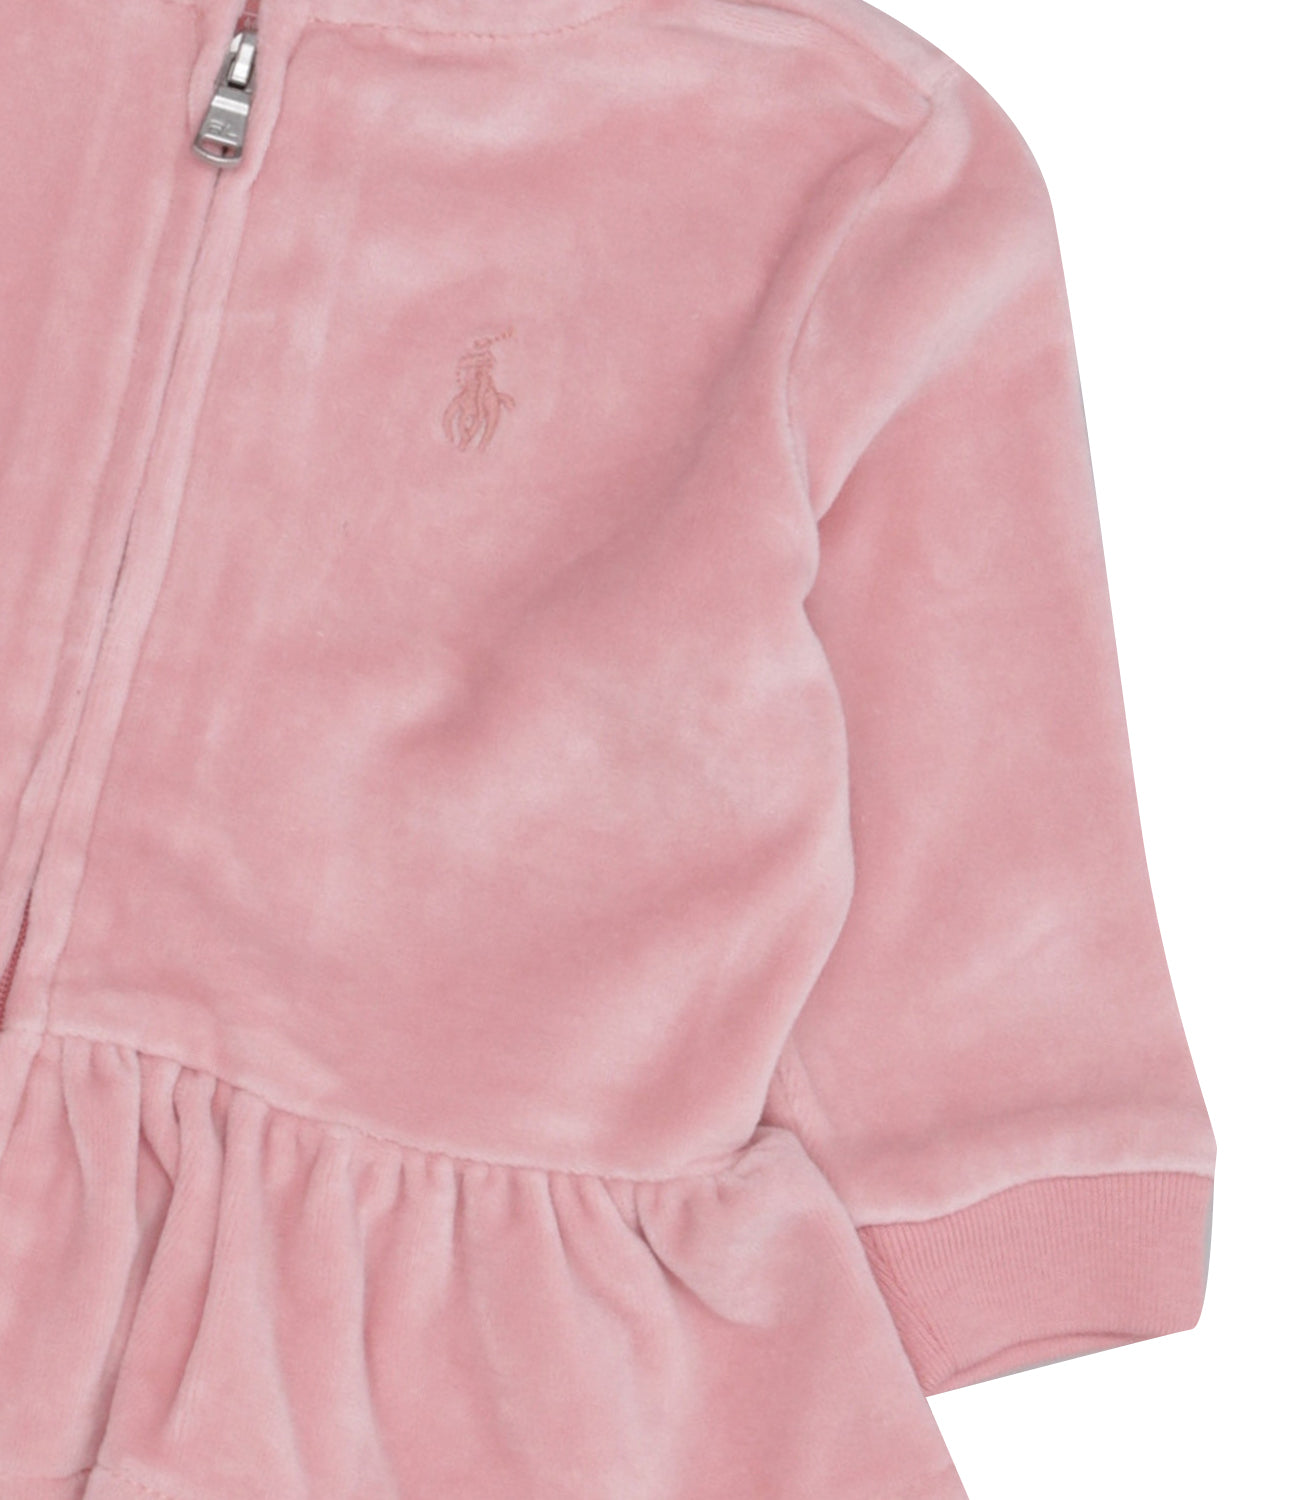 Ralph Lauren Childrenswear | Pink Sweatshirt and Pant Suit